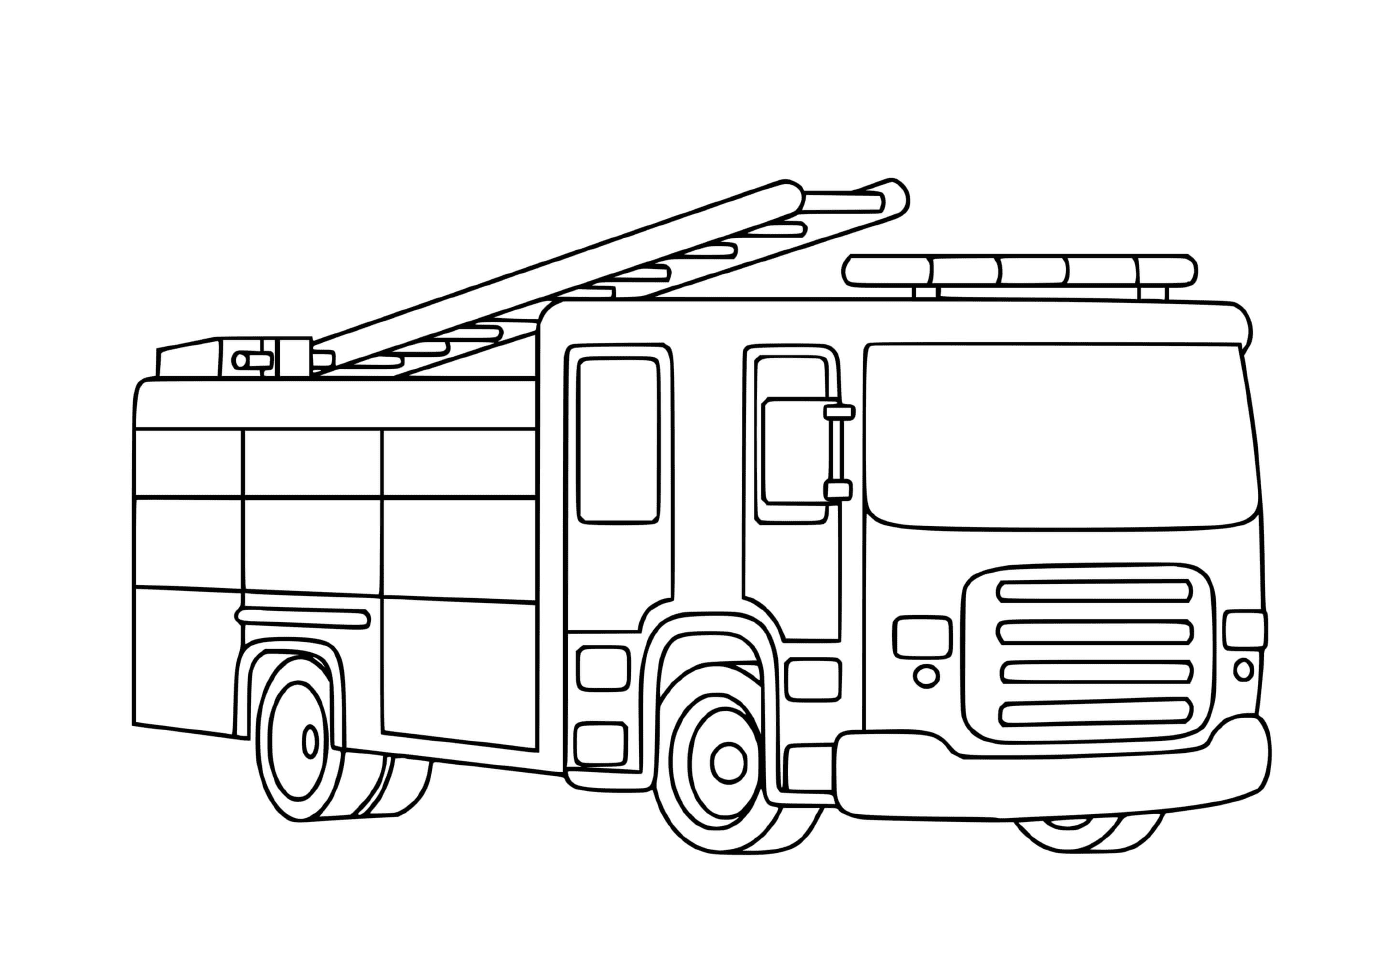  Firefighter's truck for children 